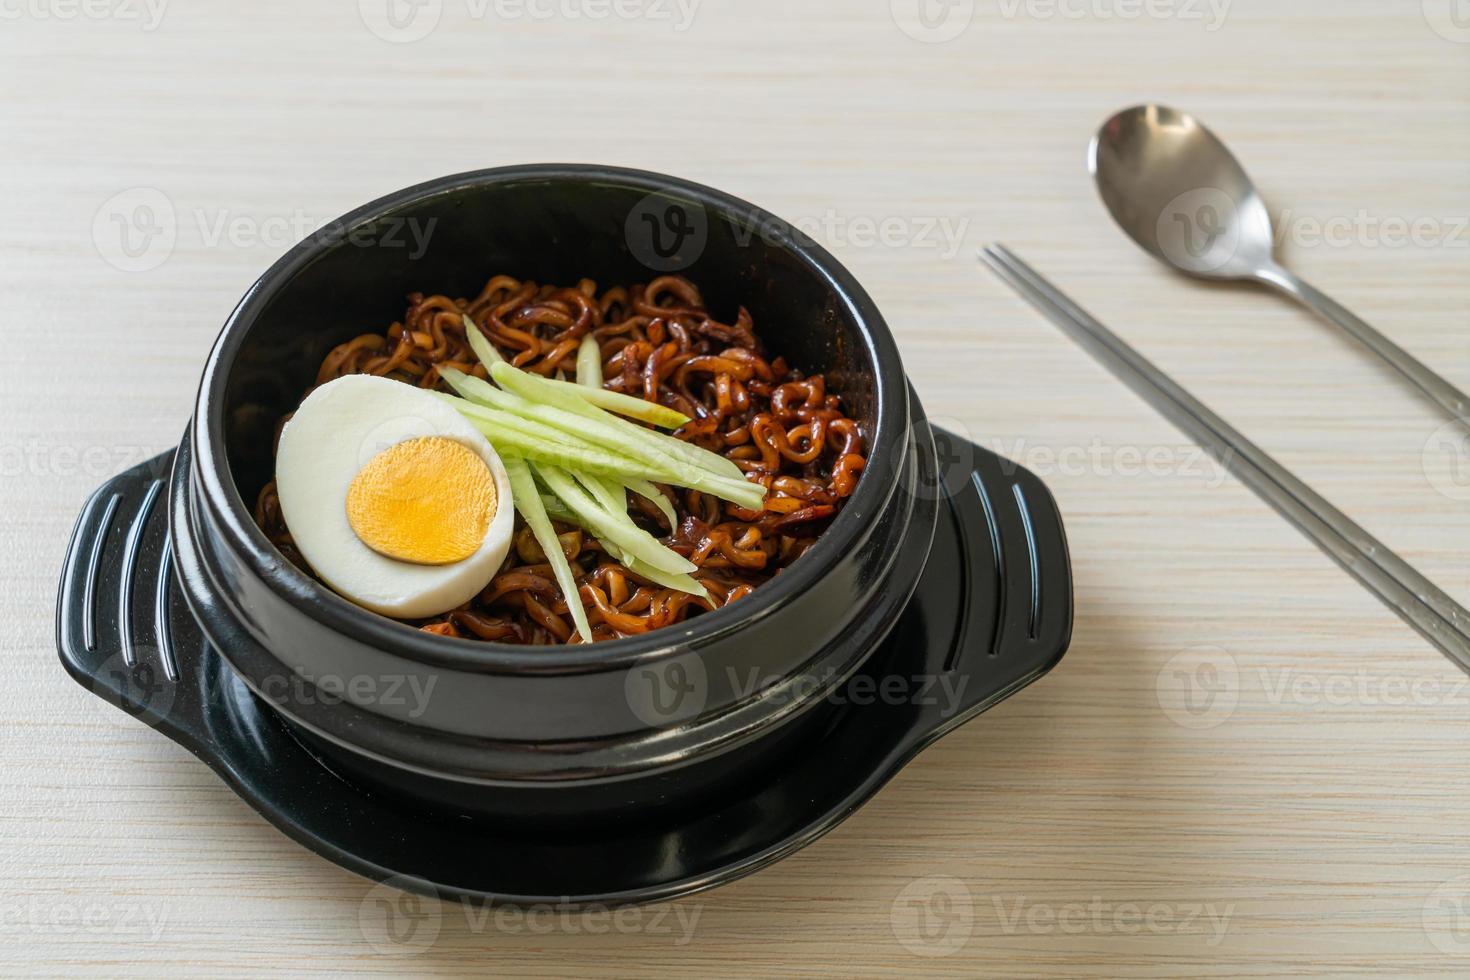 nouilles instantanées coréennes avec sauce aux haricots noirs ou jajangmyeon ou jjajangmyeon photo